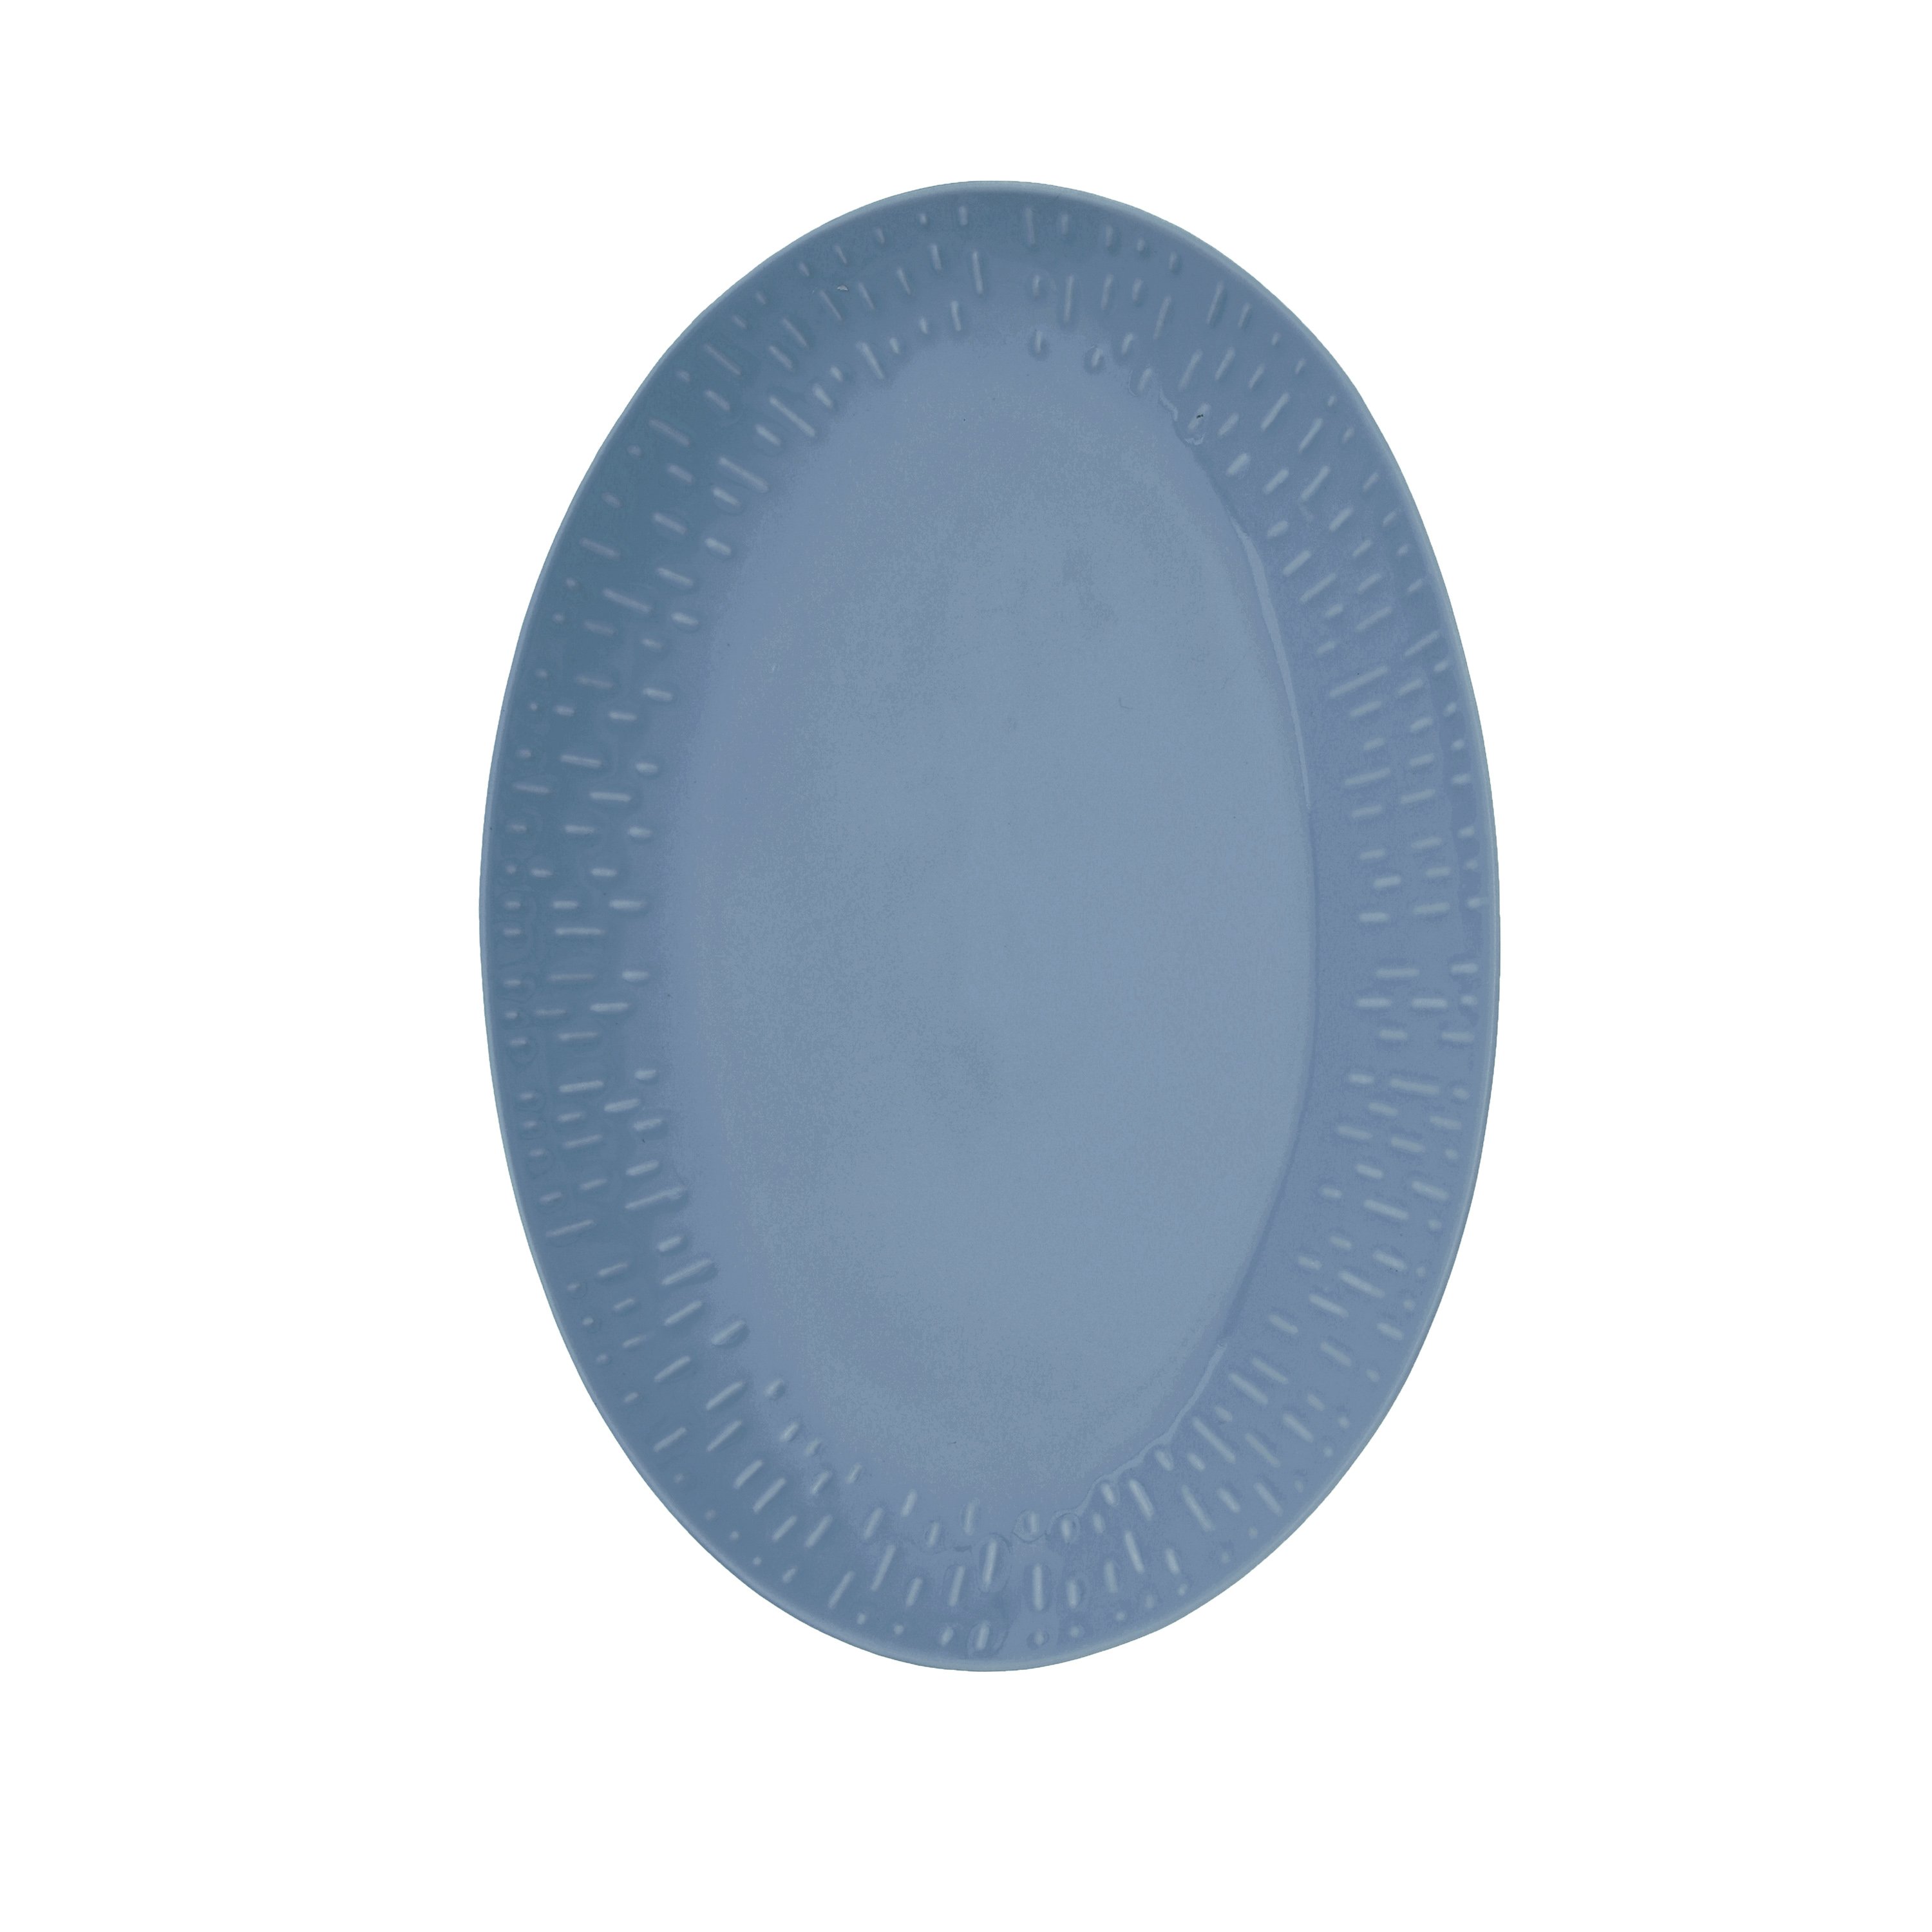 Aida - Life in Colour - Confetti - Blueberry oval dish w/relief porcelain (13434) - Hjemme og kjøkken